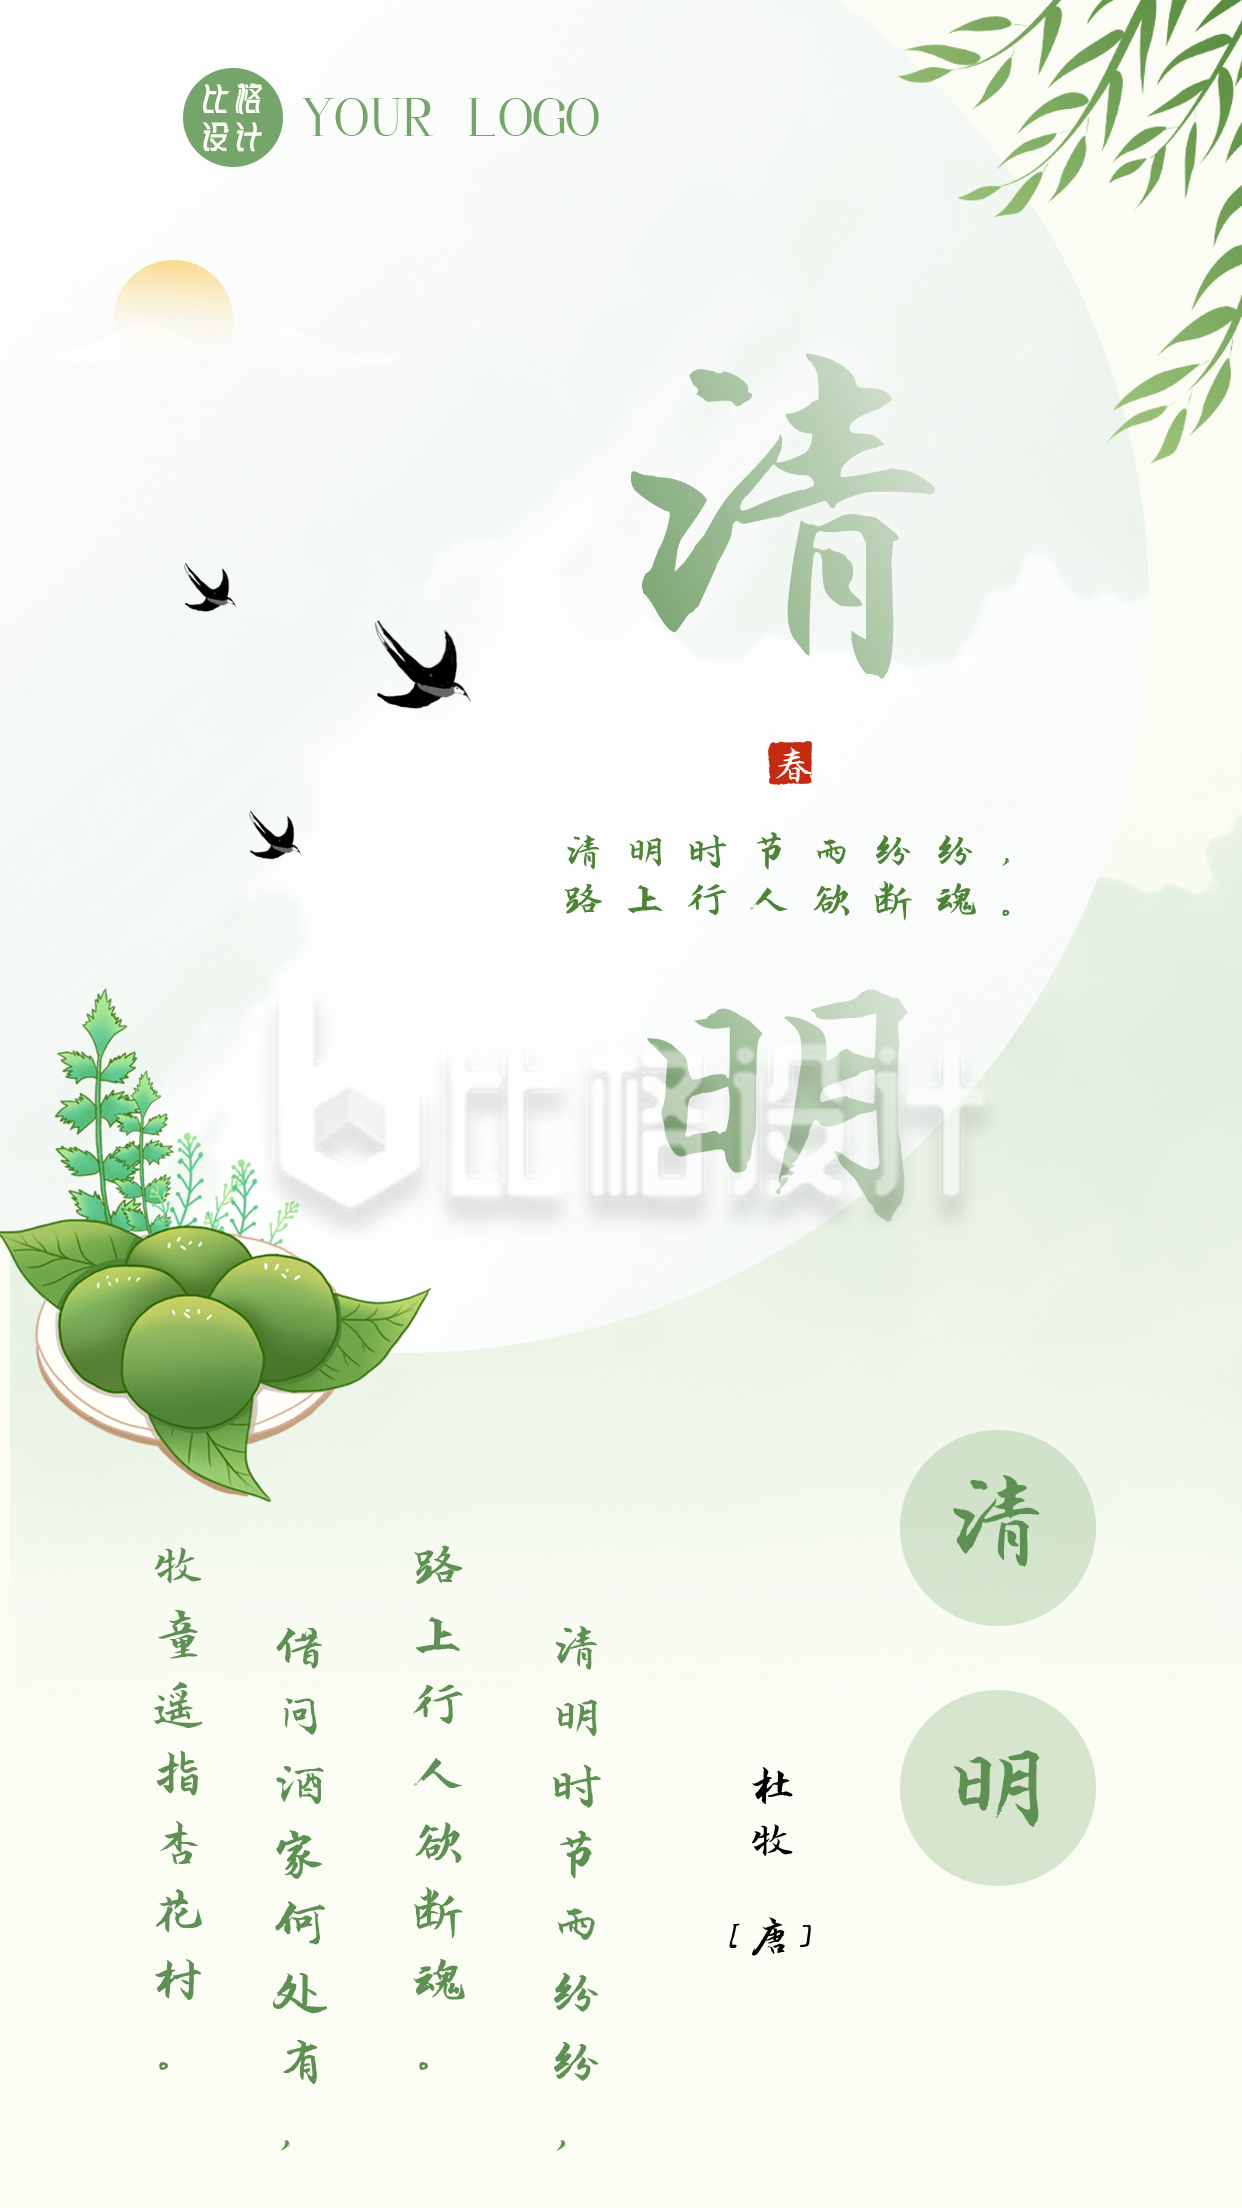 中国传统清明节习俗青团竖版配图